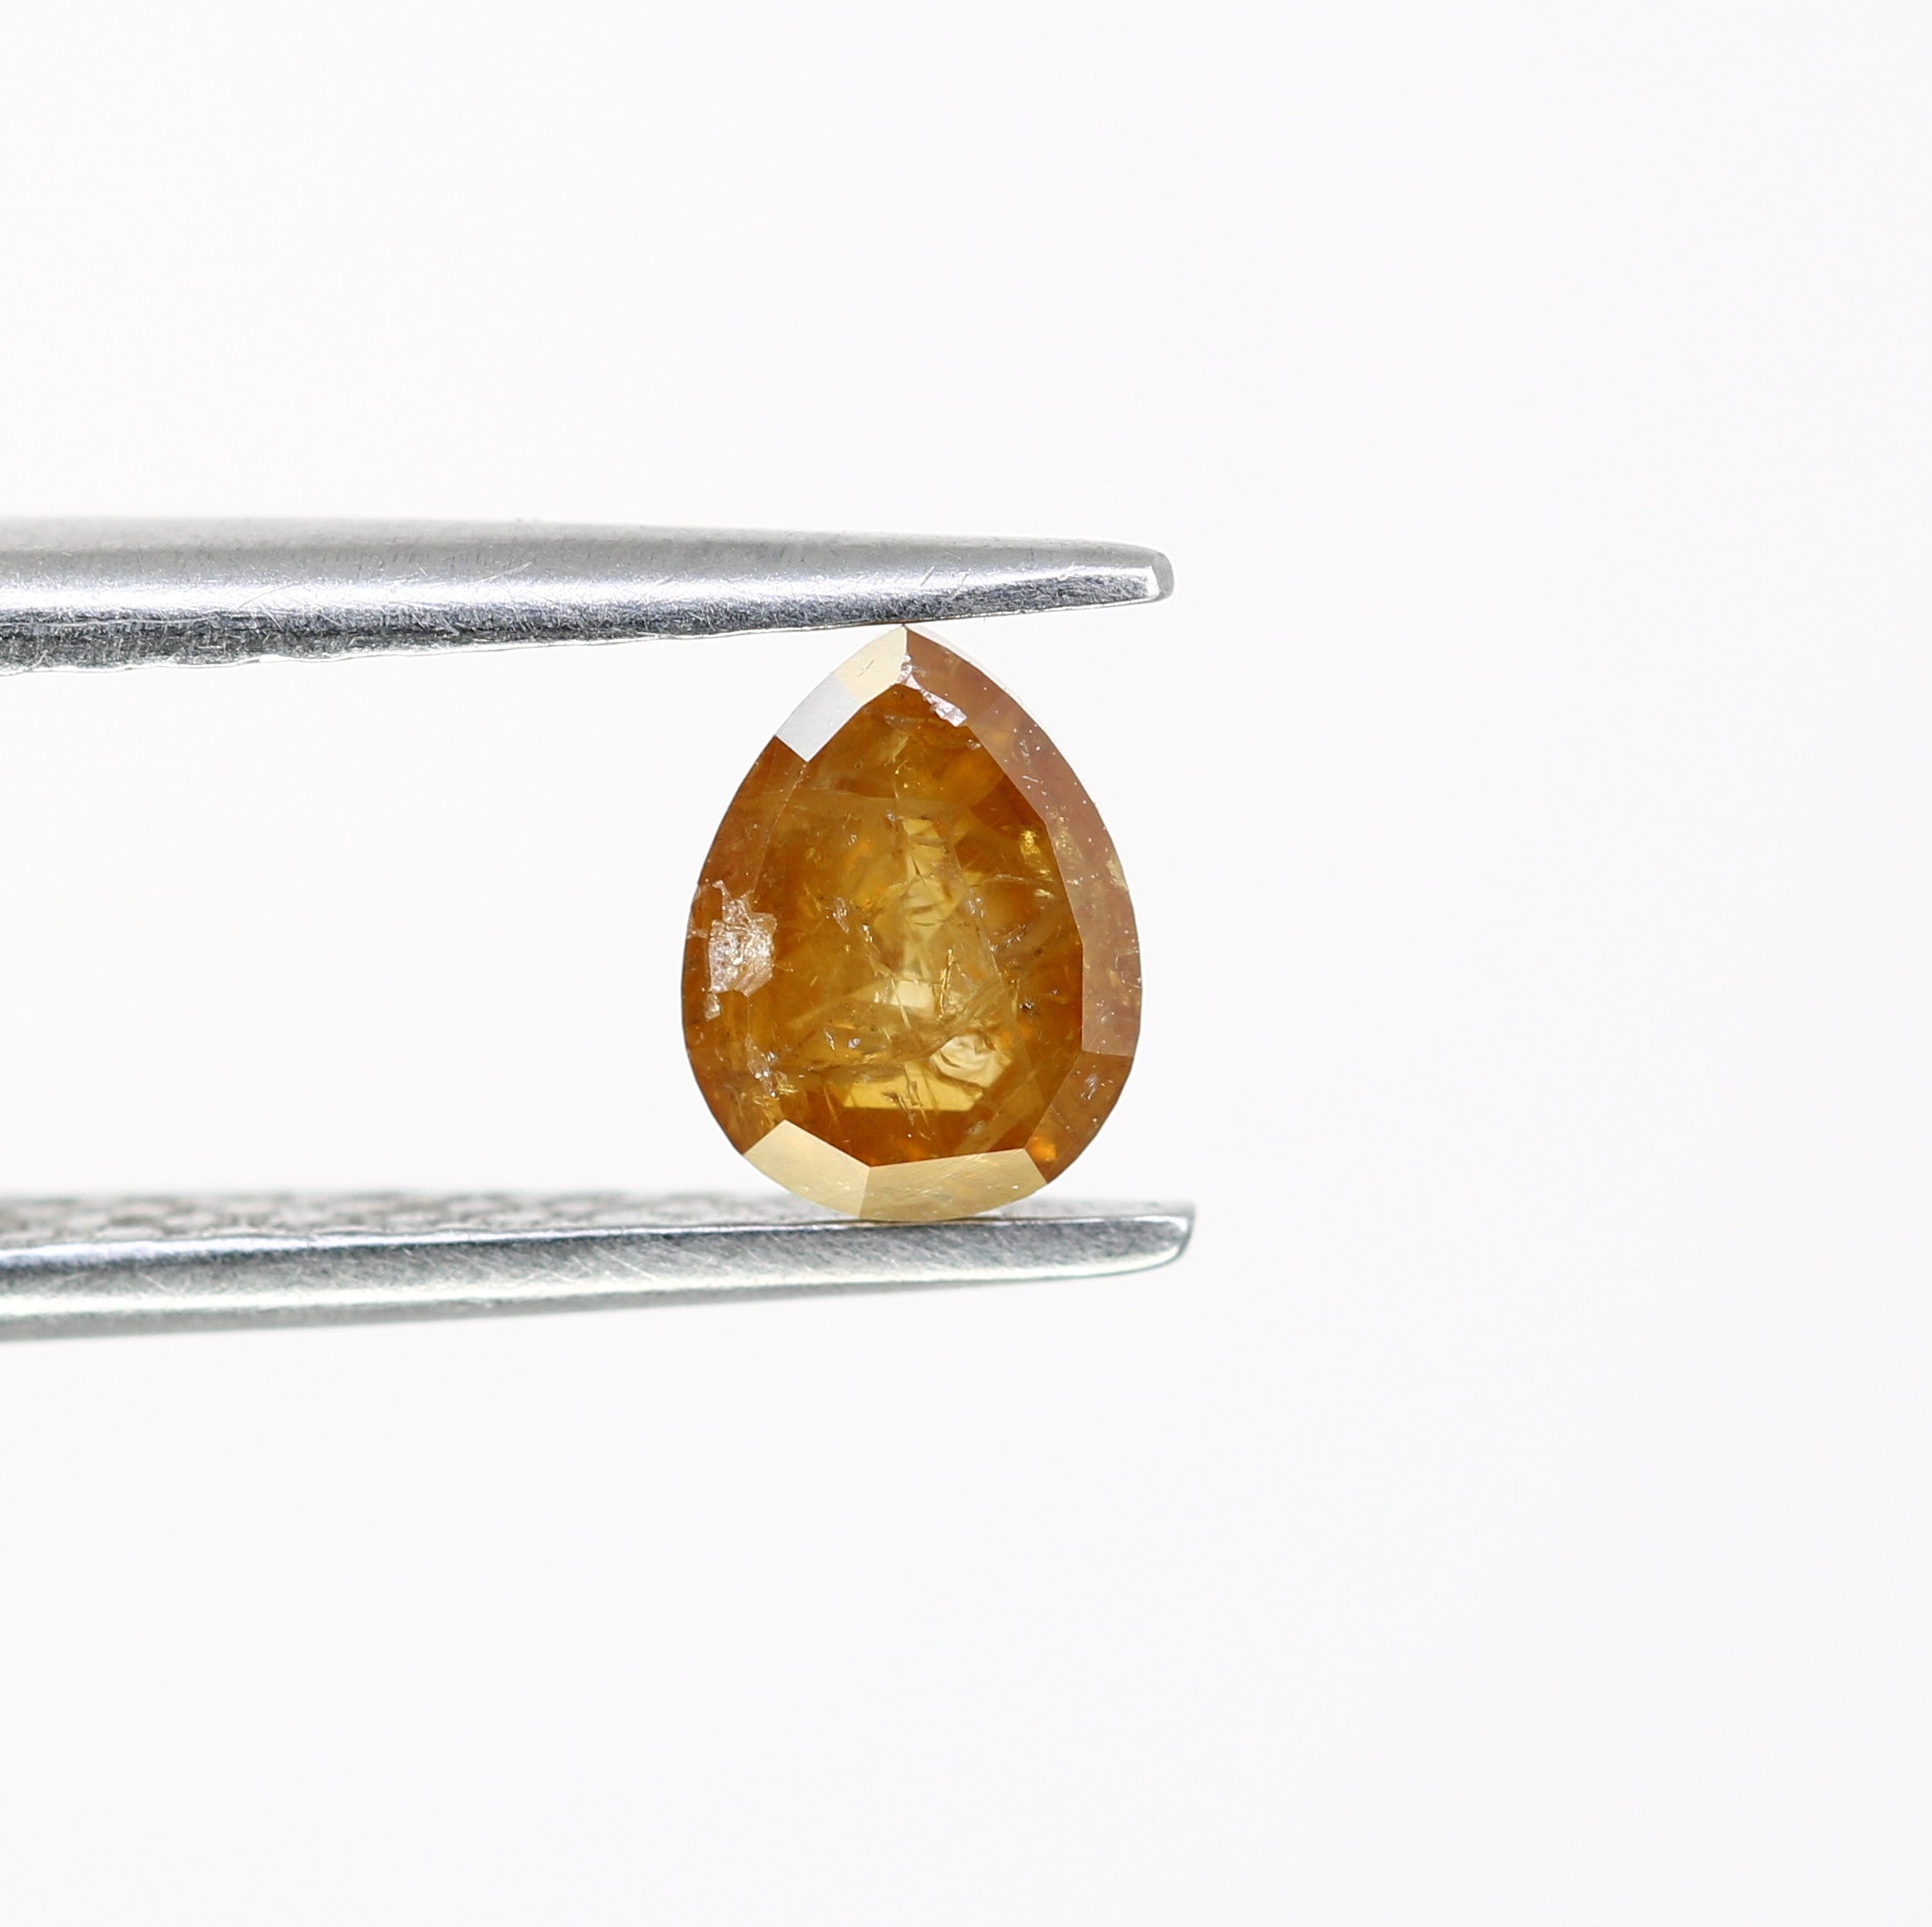 0.66 Carat Natural Orange Loose Pear Shaped Diamond For Wedding Ring